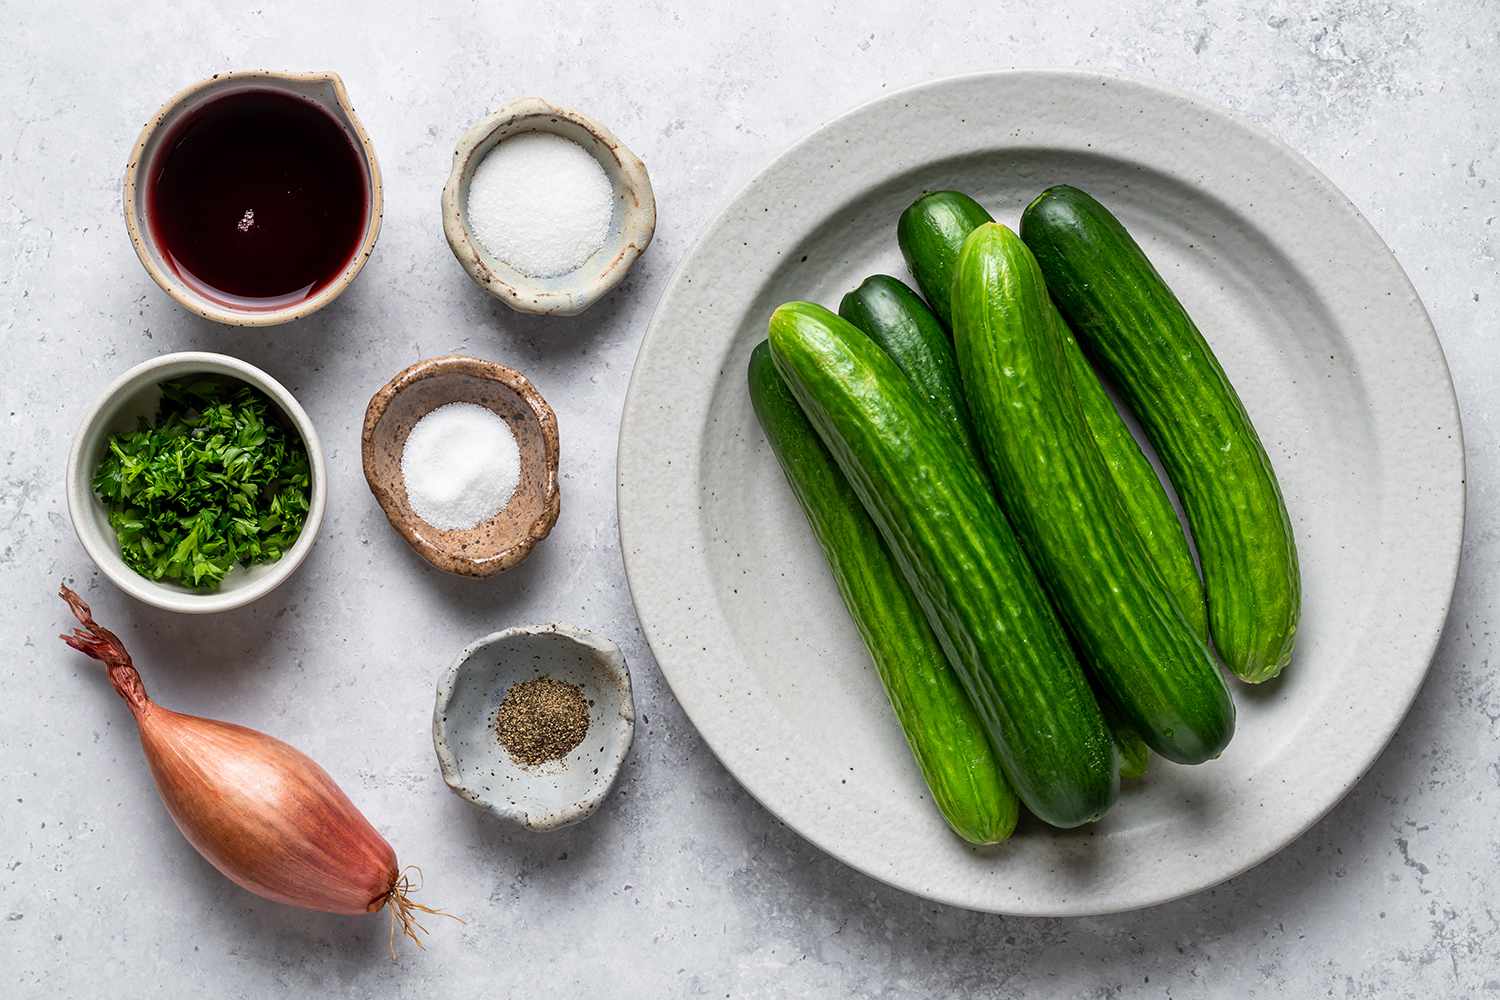 Ingredients to make cucumber salad